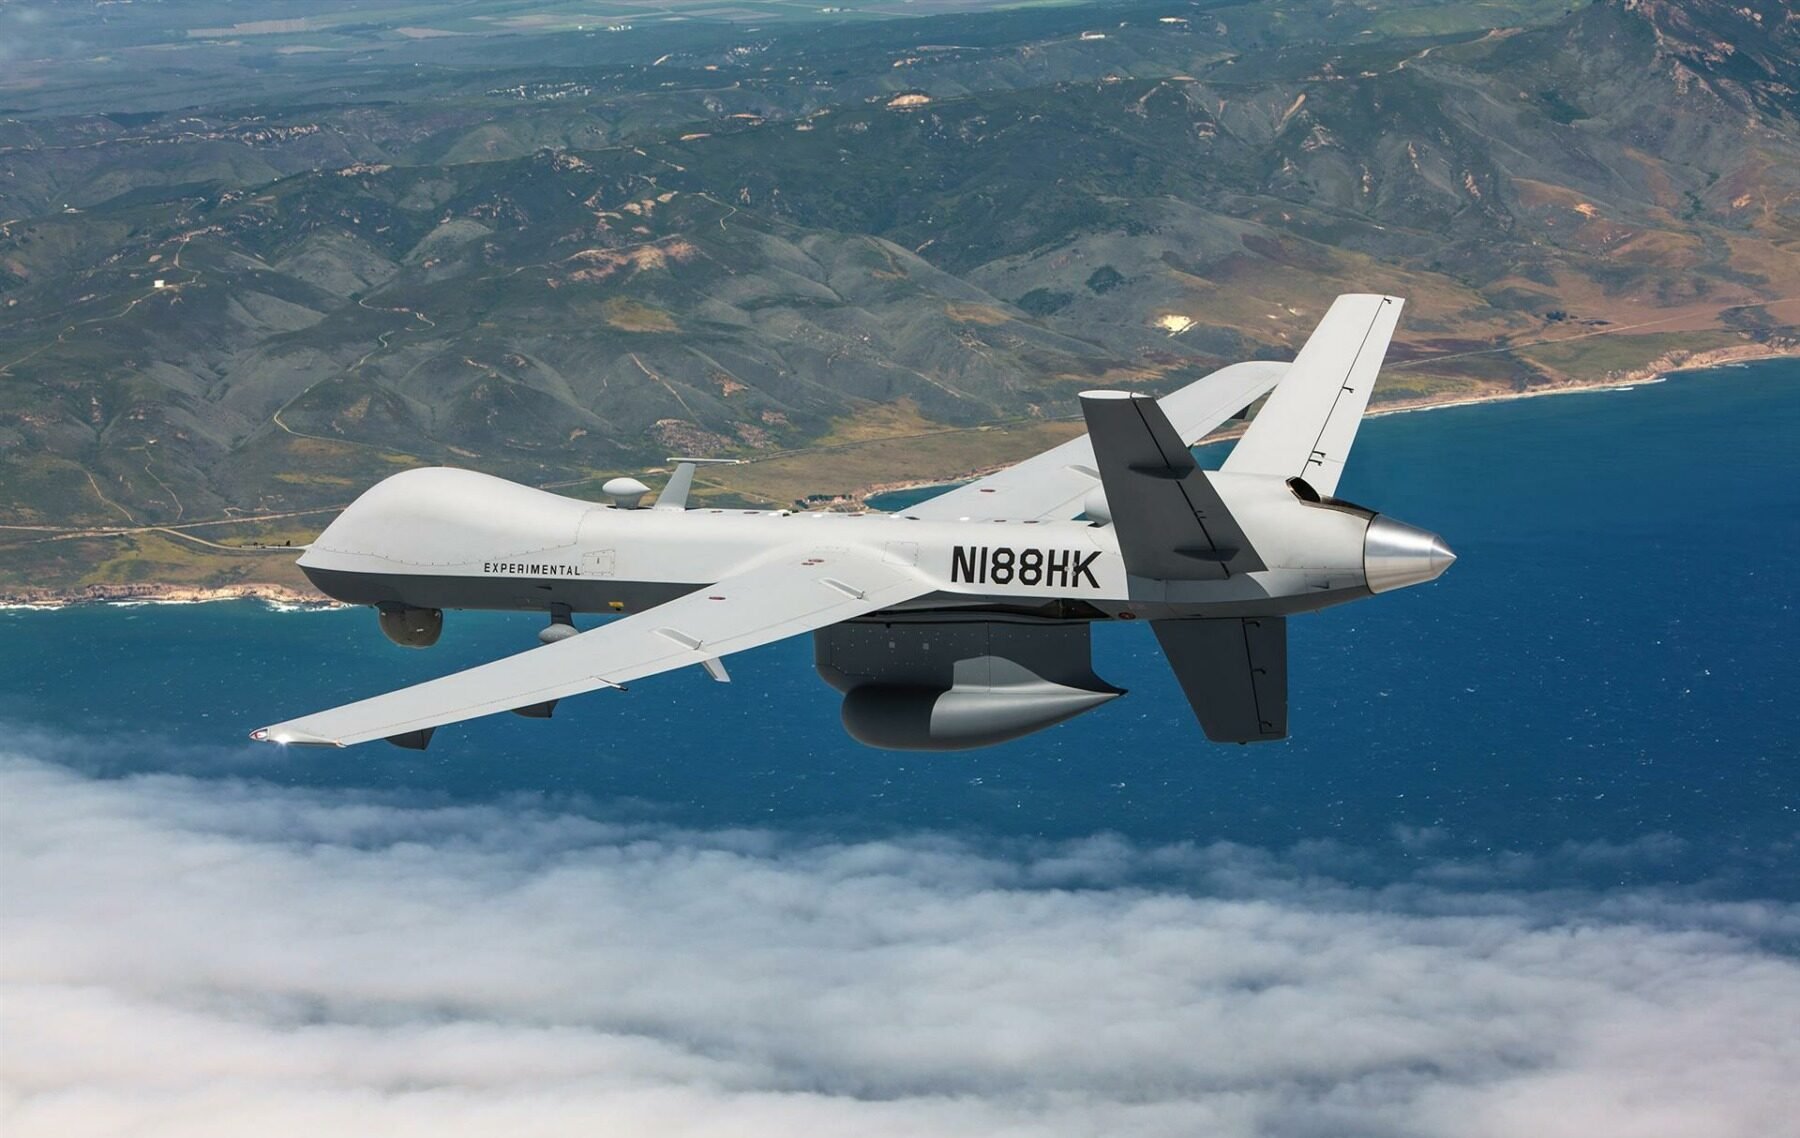  Drona americană doborâtă de ruși deasupra Mării Negre decolase din România (NYT)